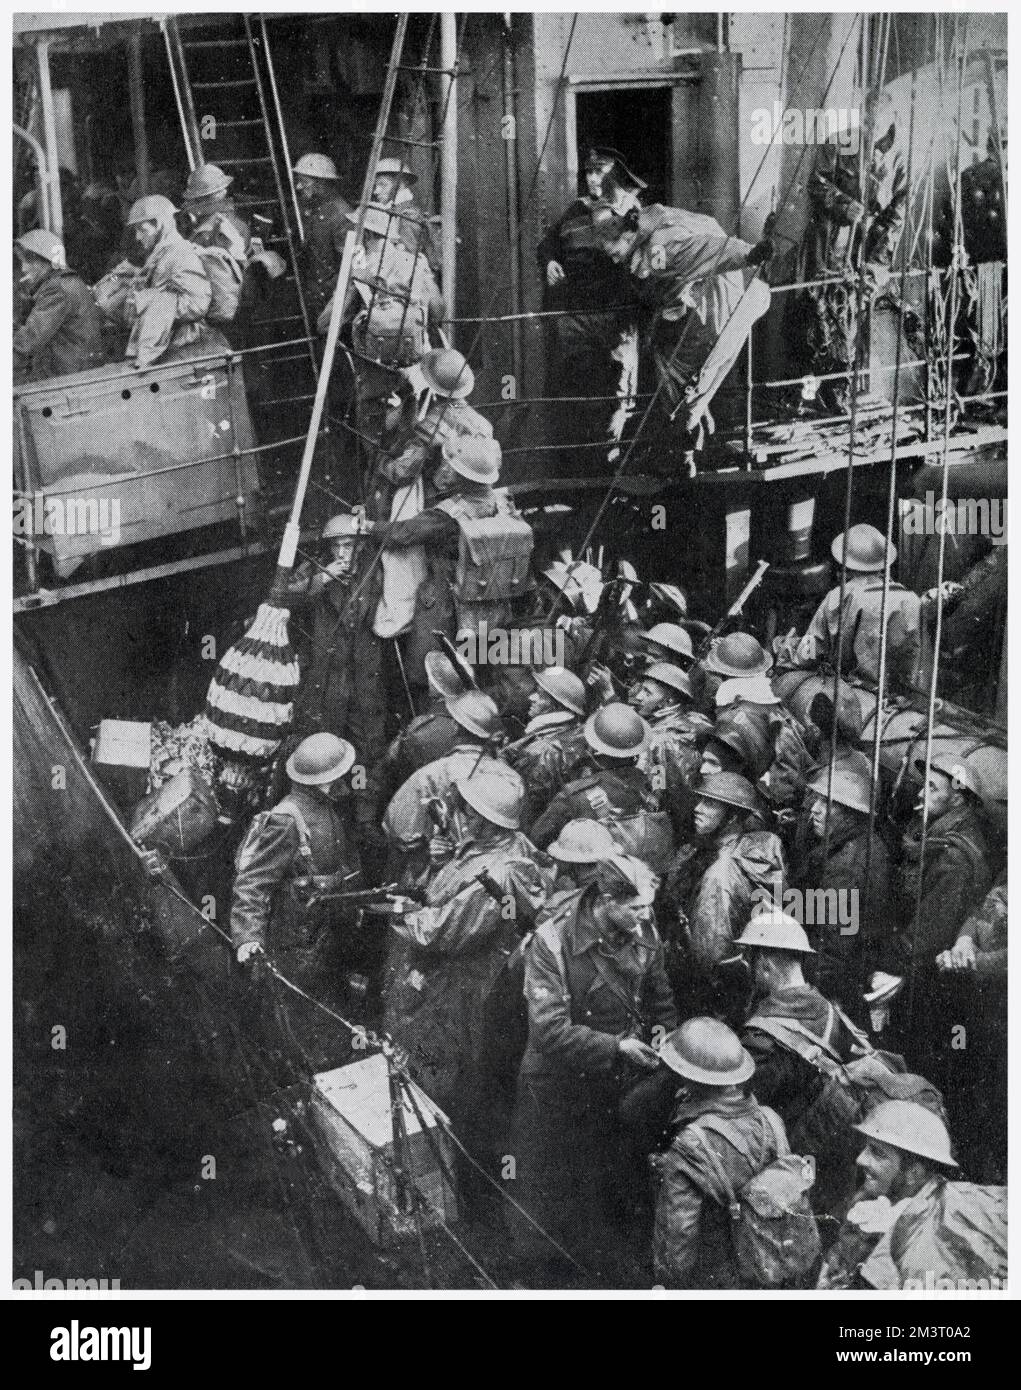 Männer der britischen Expeditionstruppe, die nach der Evakuierung aus Dünkirchen auf einen Zerstörer im mittleren Ärmelkanal gehen, für ihre sichere Rückkehr nach England. Datum: 1940 Stockfoto